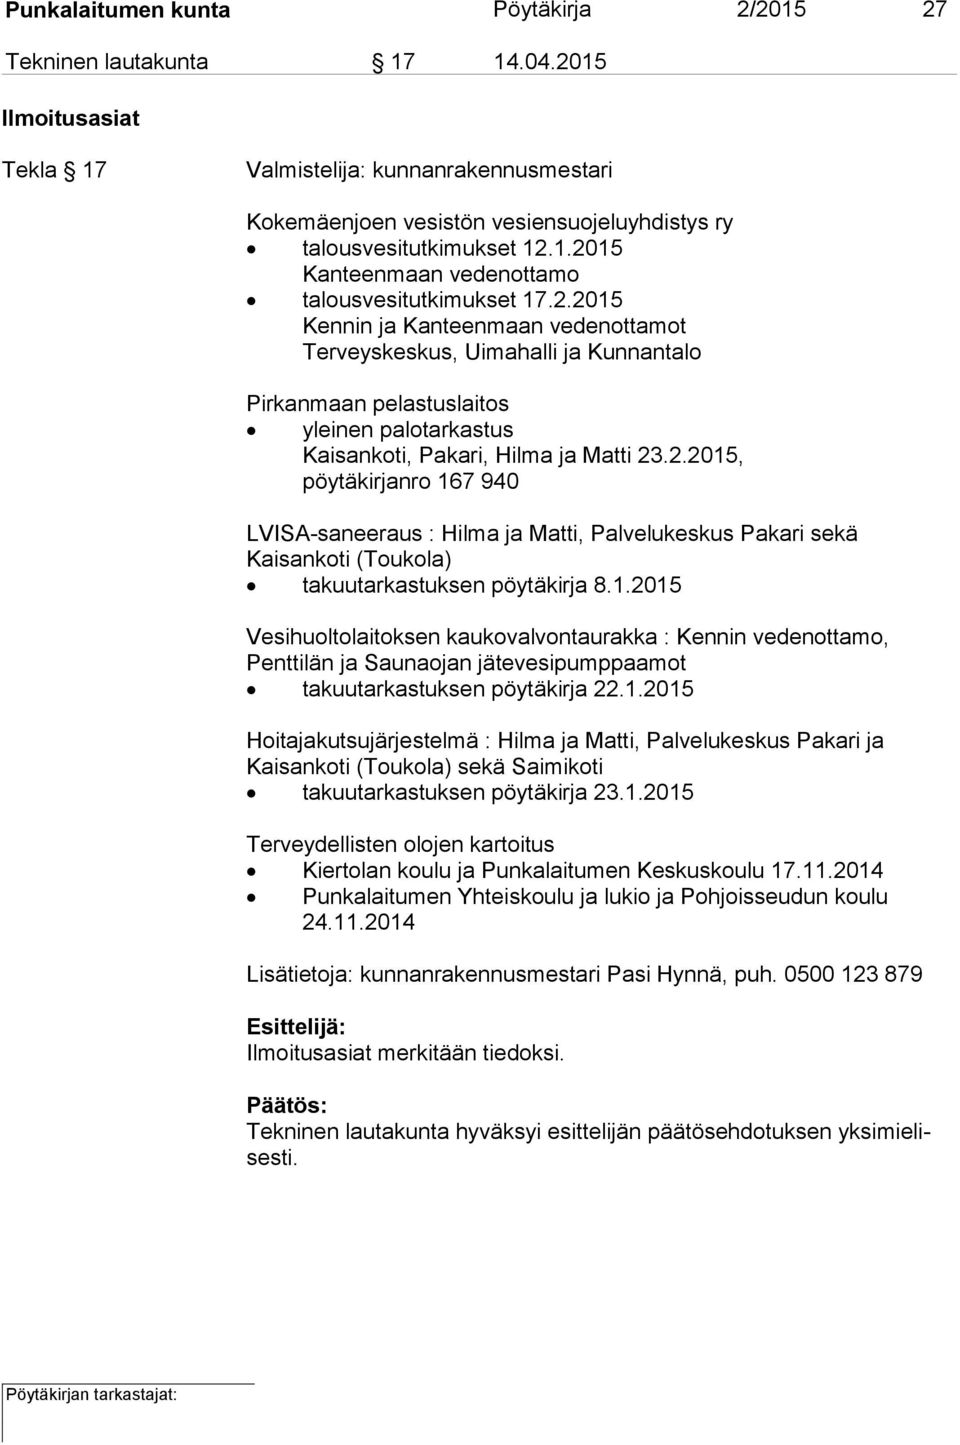 2.2015, pöytäkirjanro 167 940 LVISA-saneeraus : Hilma ja Matti, Palvelukeskus Pakari sekä Kaisankoti (Toukola) takuutarkastuksen pöytäkirja 8.1.2015 Vesihuoltolaitoksen kaukovalvontaurakka : Kennin vedenottamo, Penttilän ja Saunaojan jätevesipumppaamot takuutarkastuksen pöytäkirja 22.